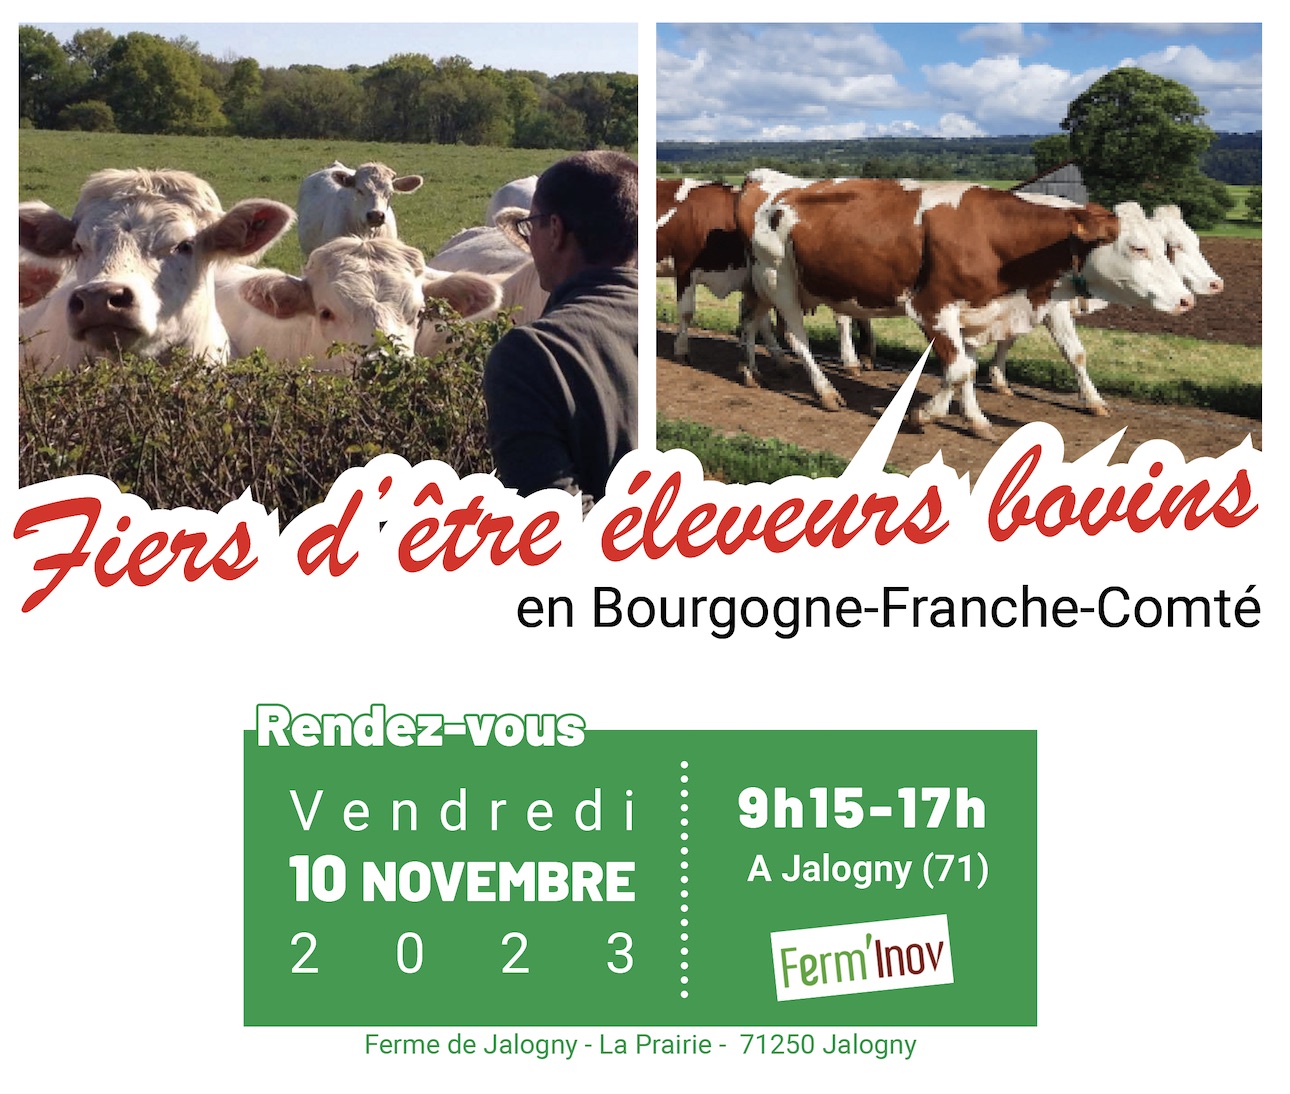 « Fiers d’être éleveurs bovins en Bourgogne-Franche-Comté »